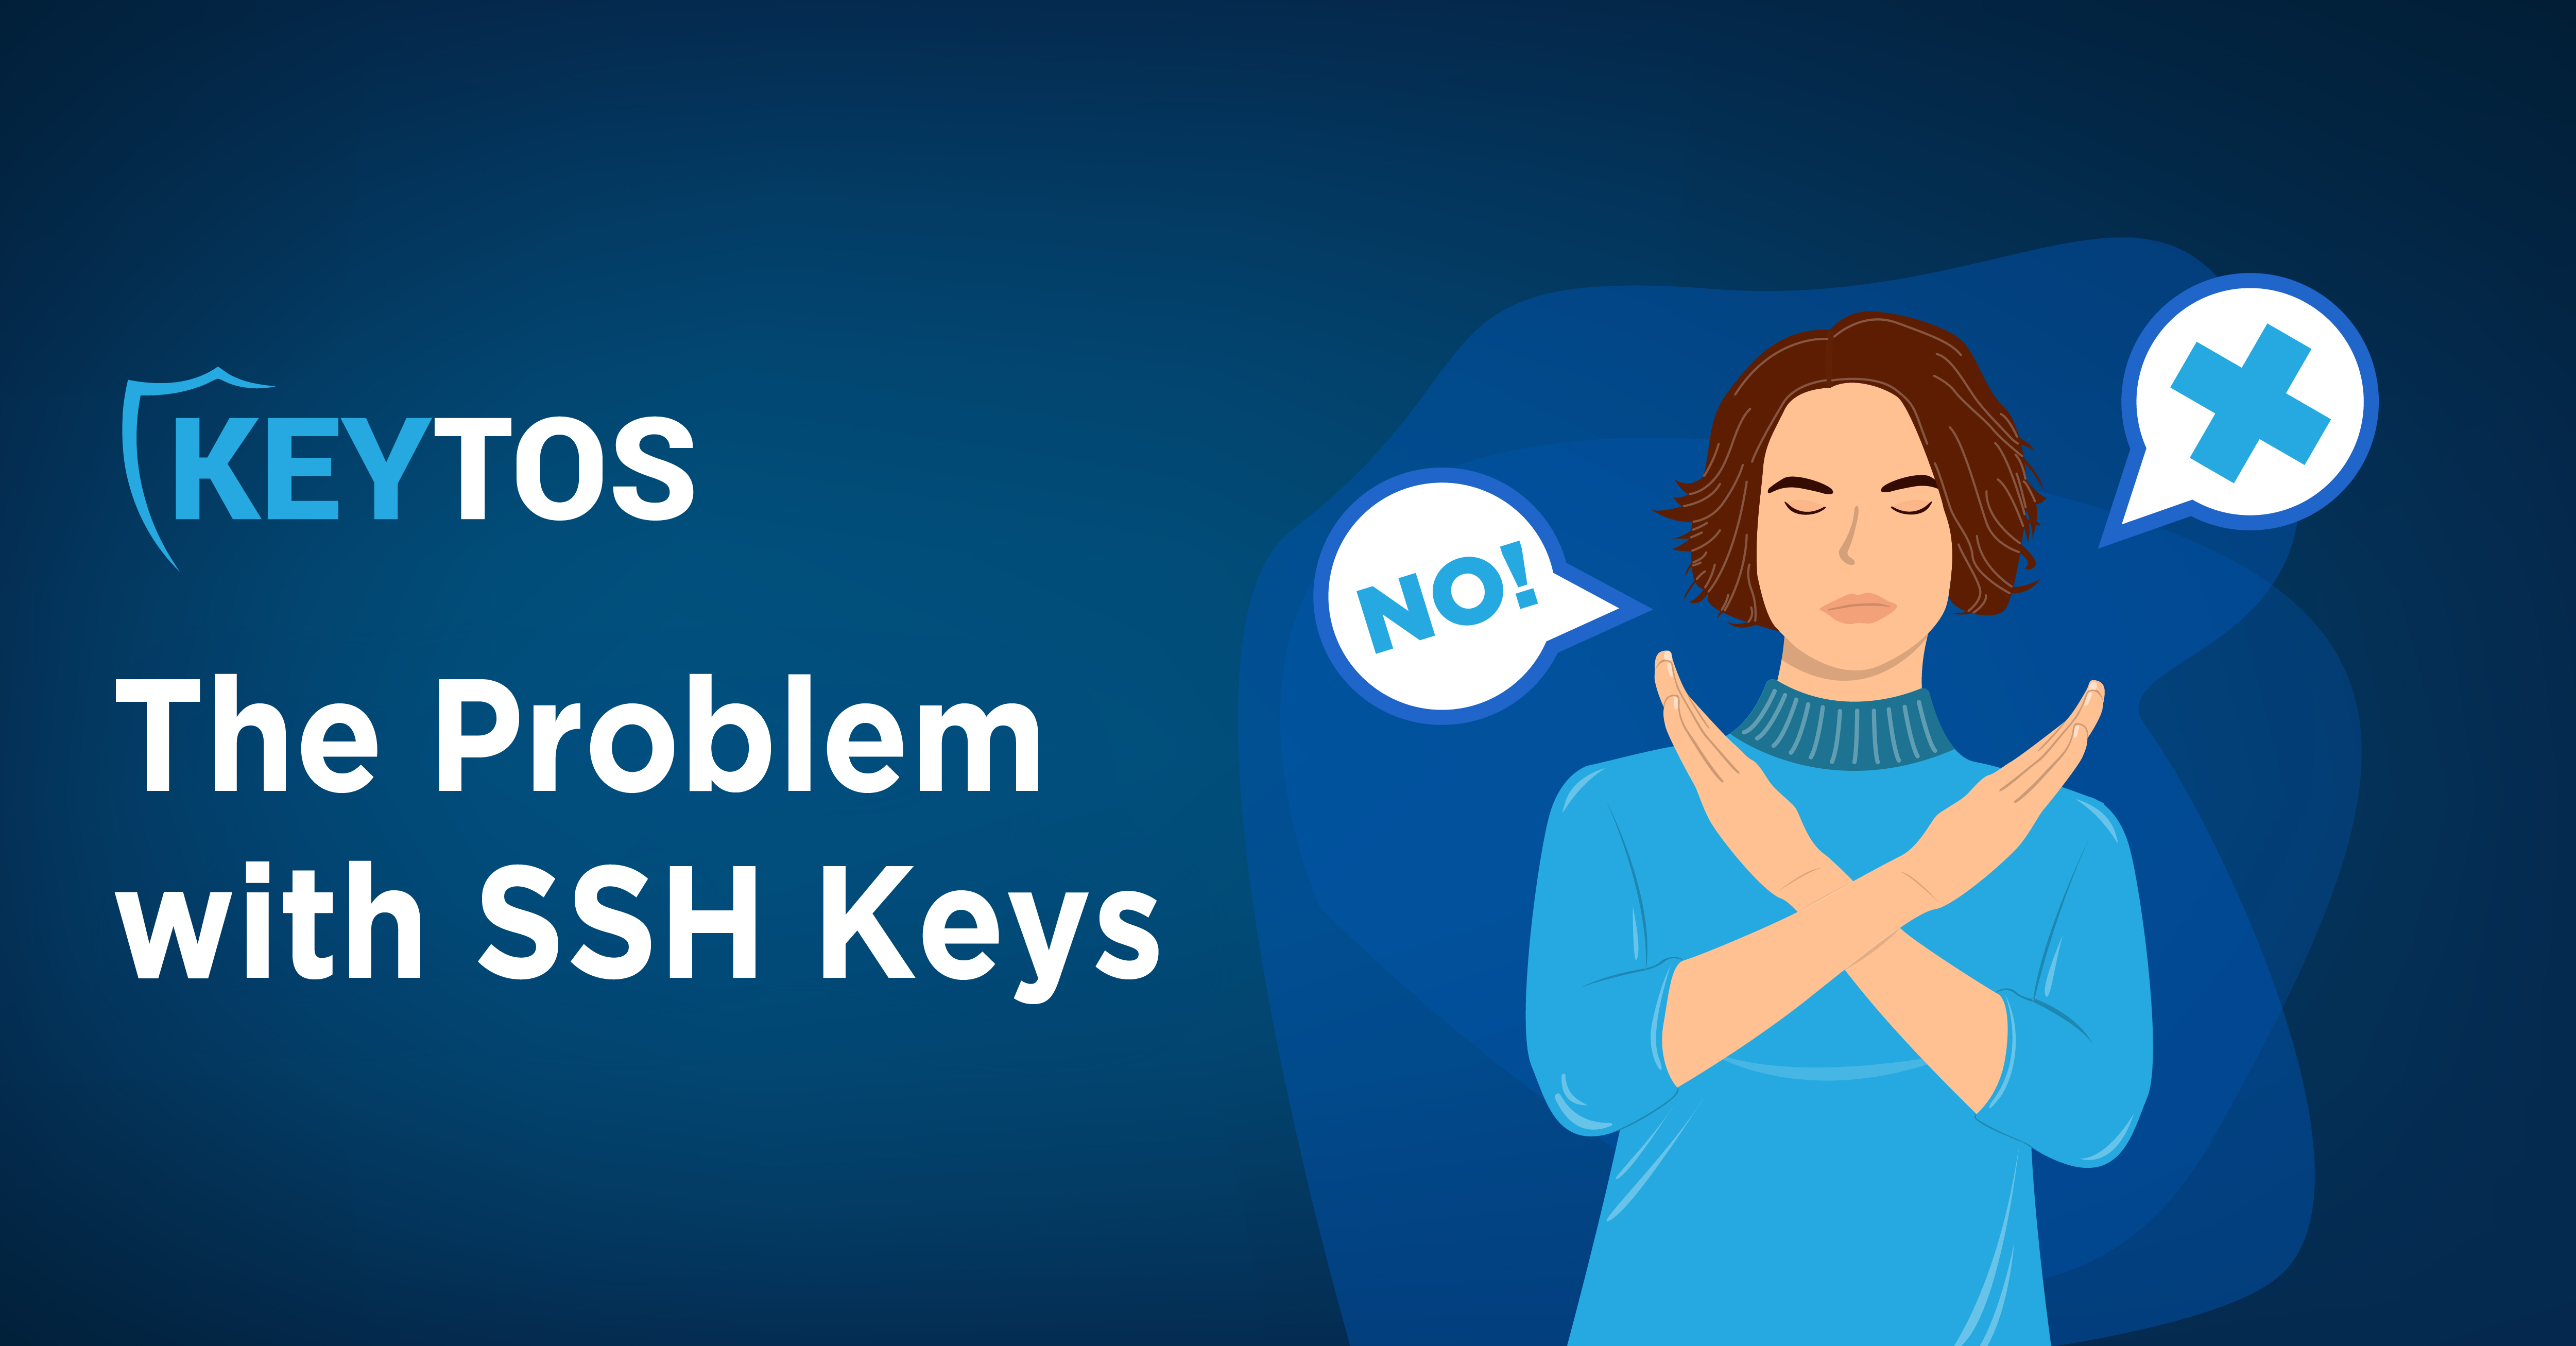 Por qué las claves SSH son malas